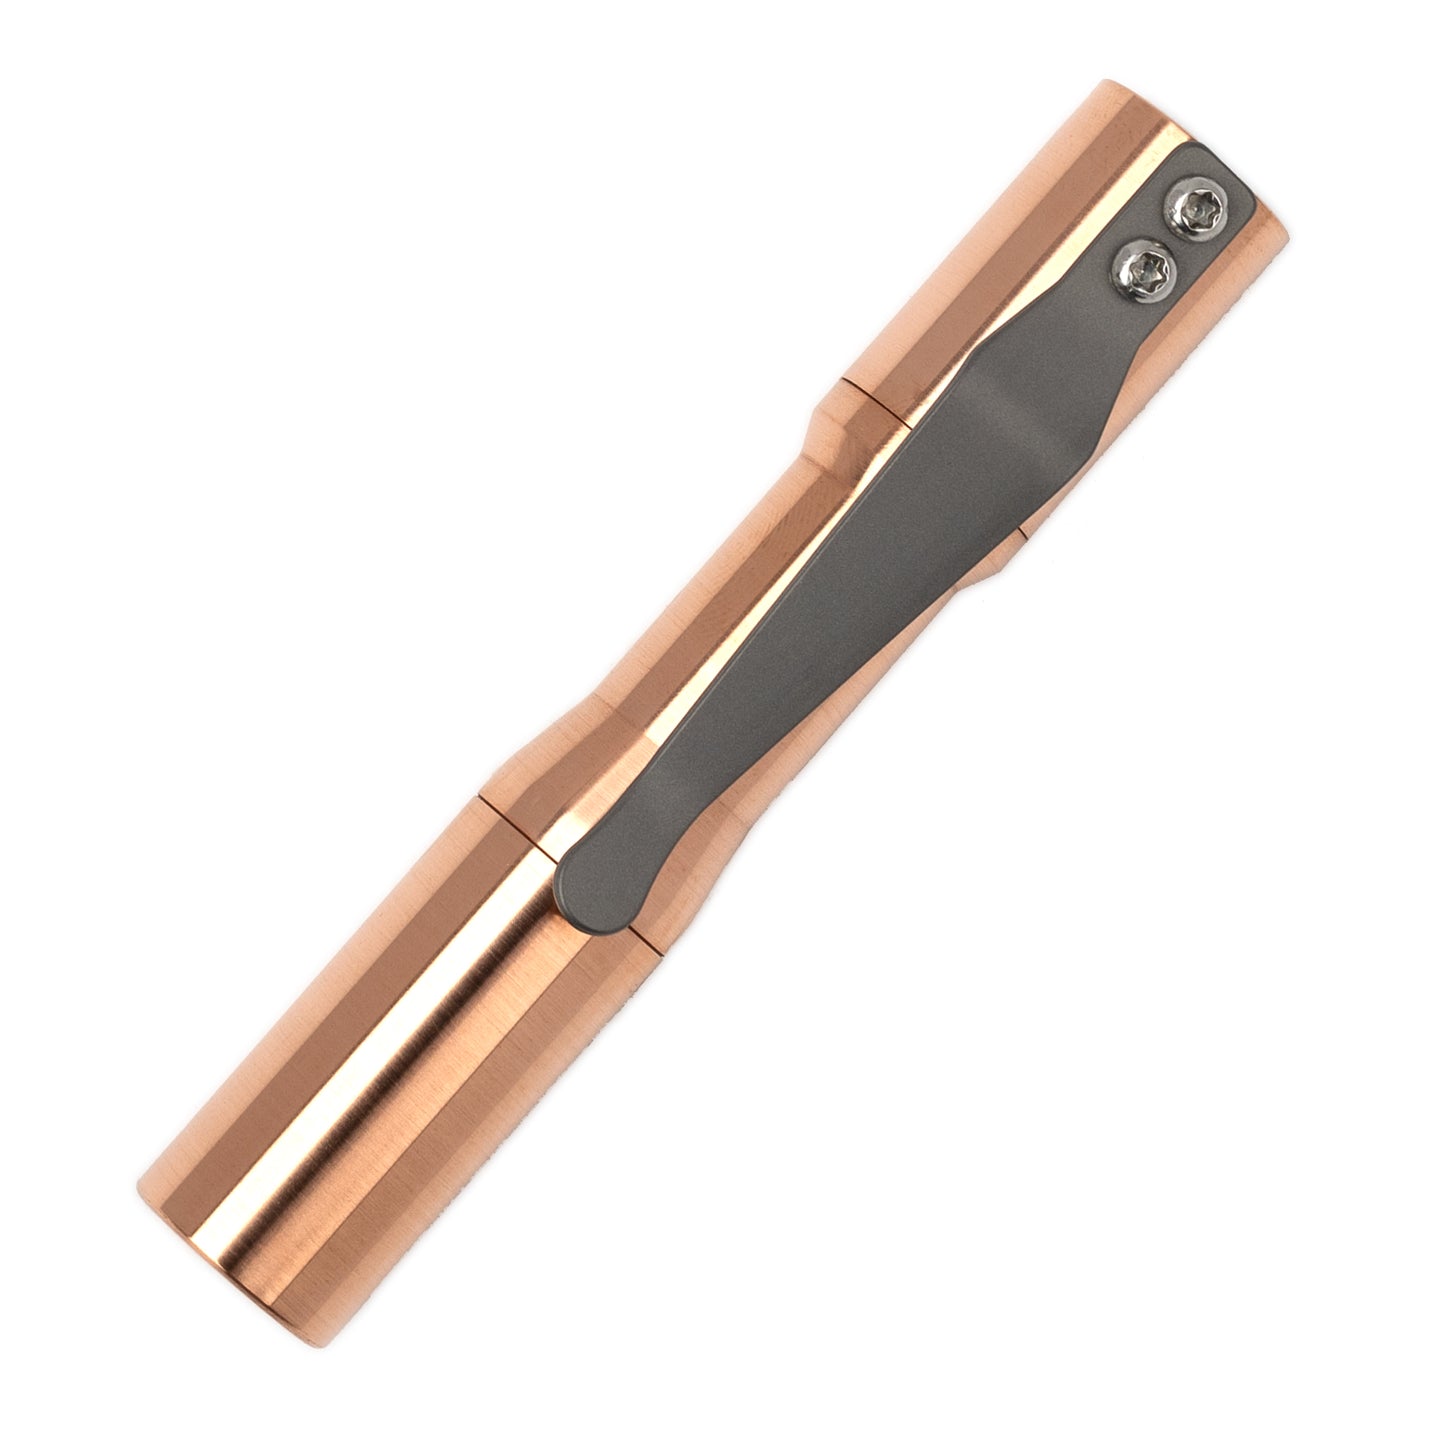 Micro Click - Copper